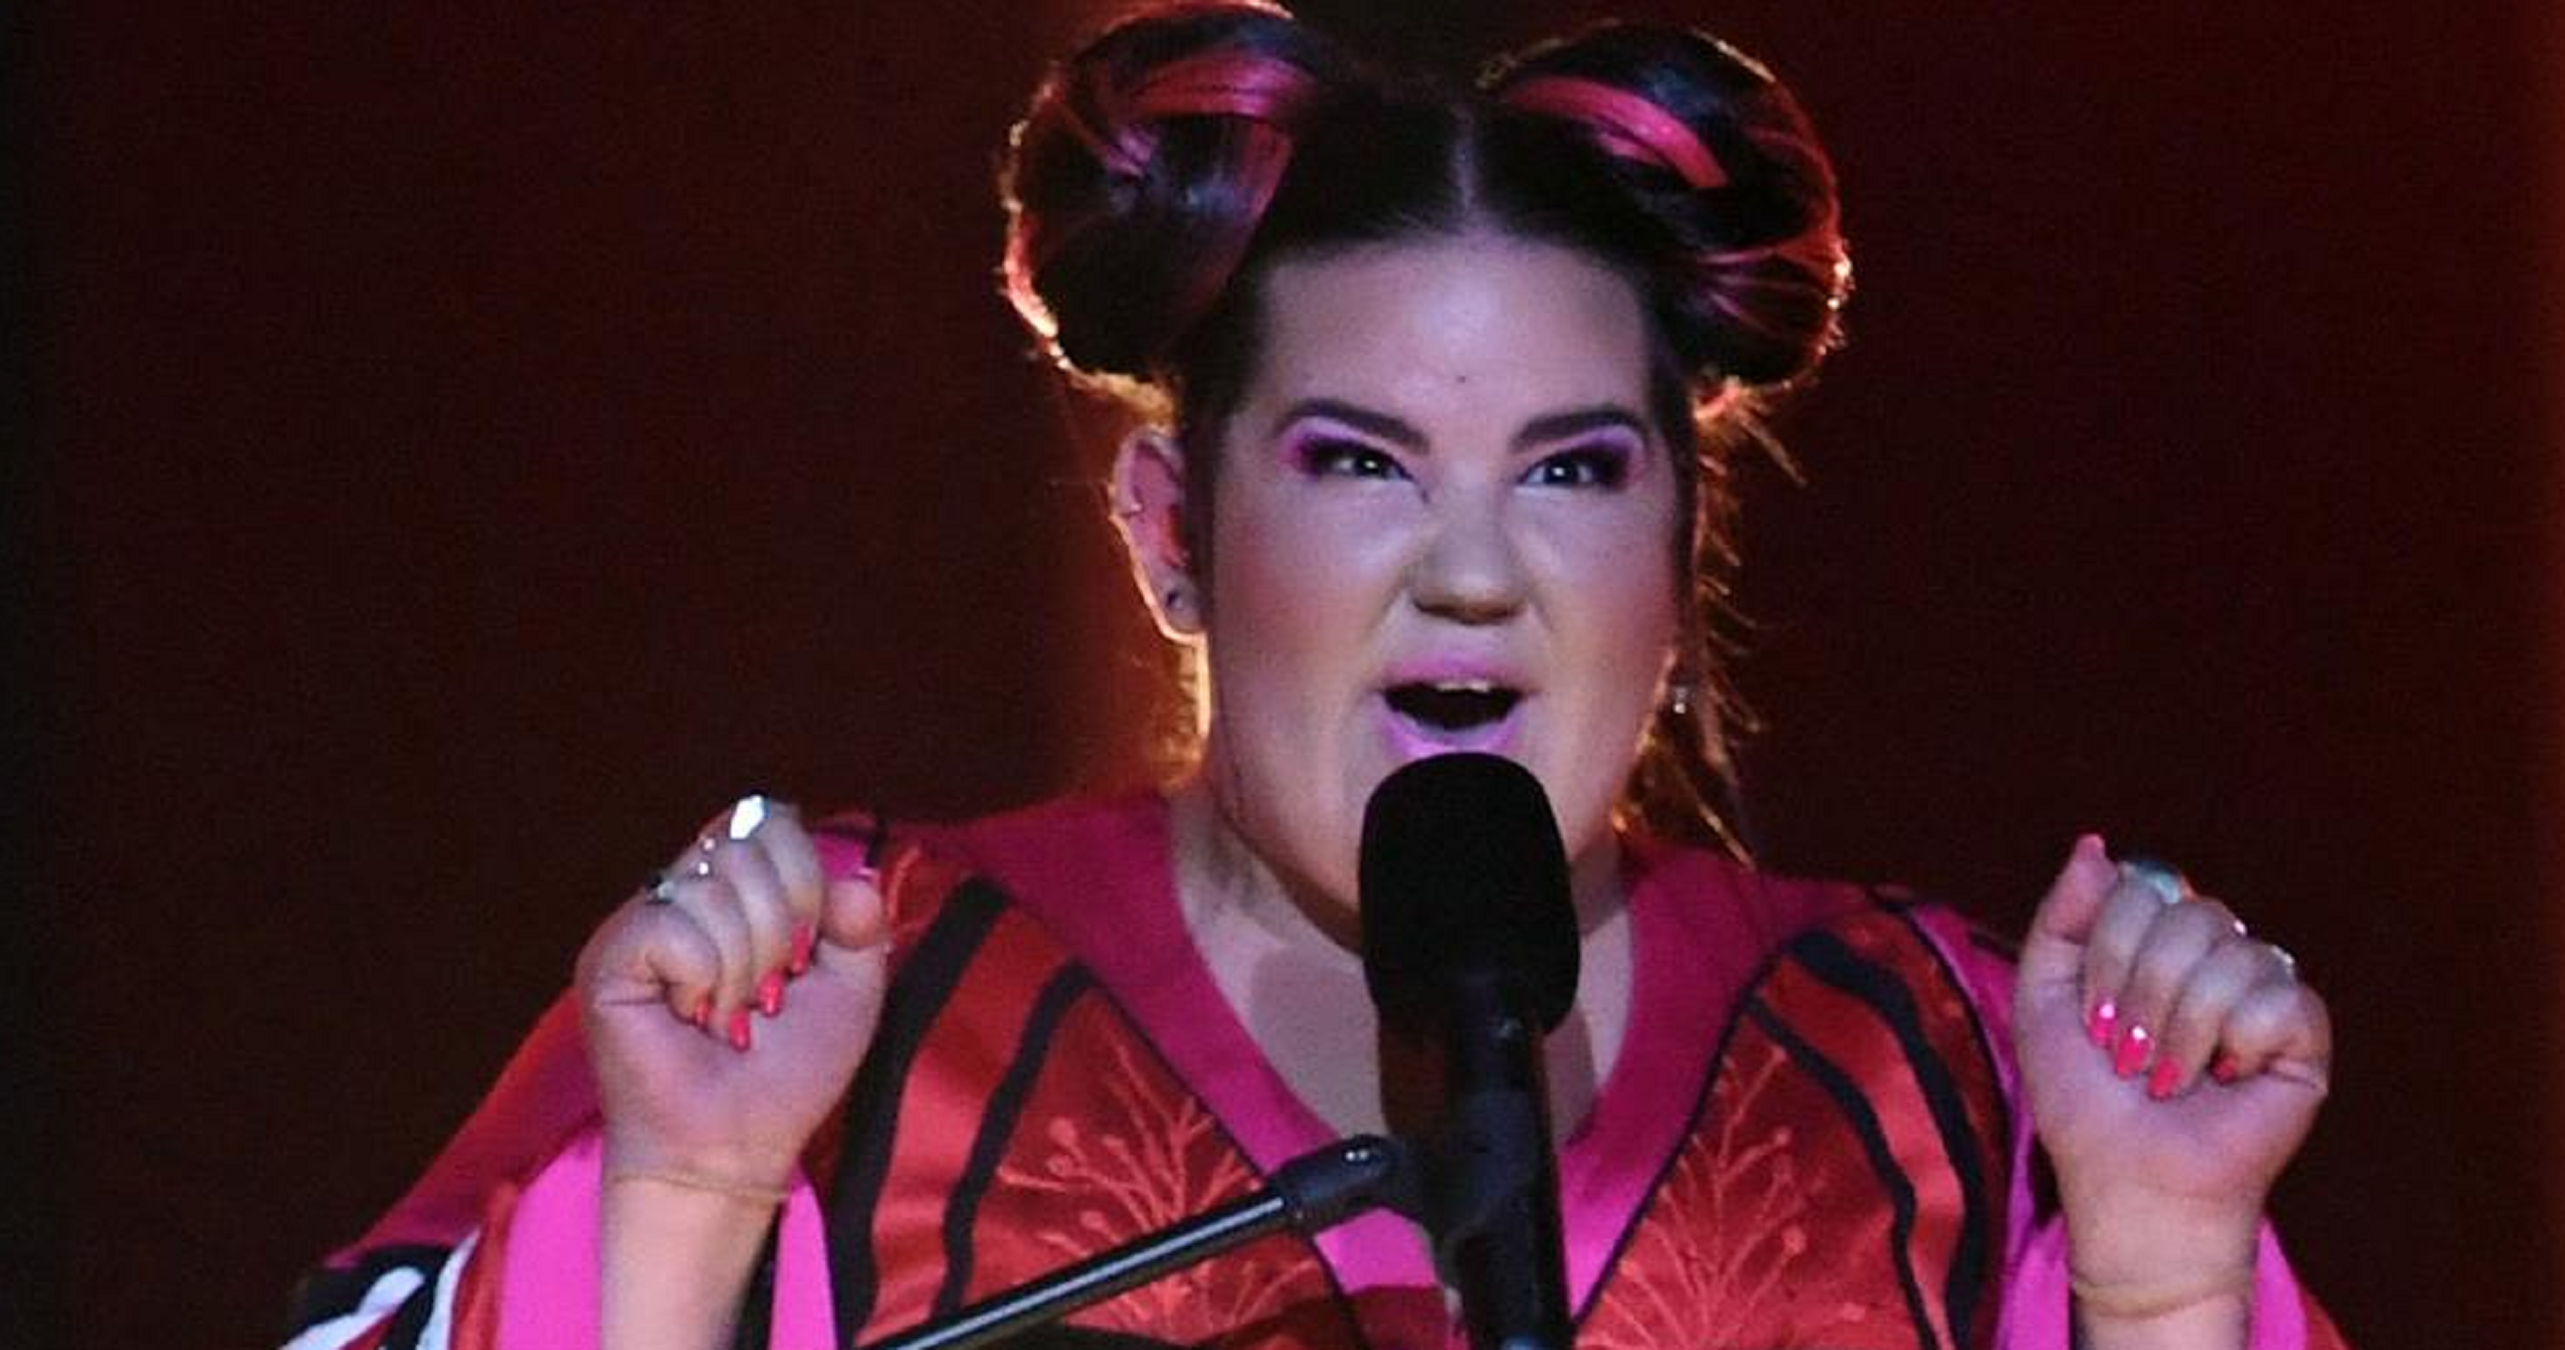 Espectacular patacada de la representant d'Israel a Eurovisió en baixar l'escenari